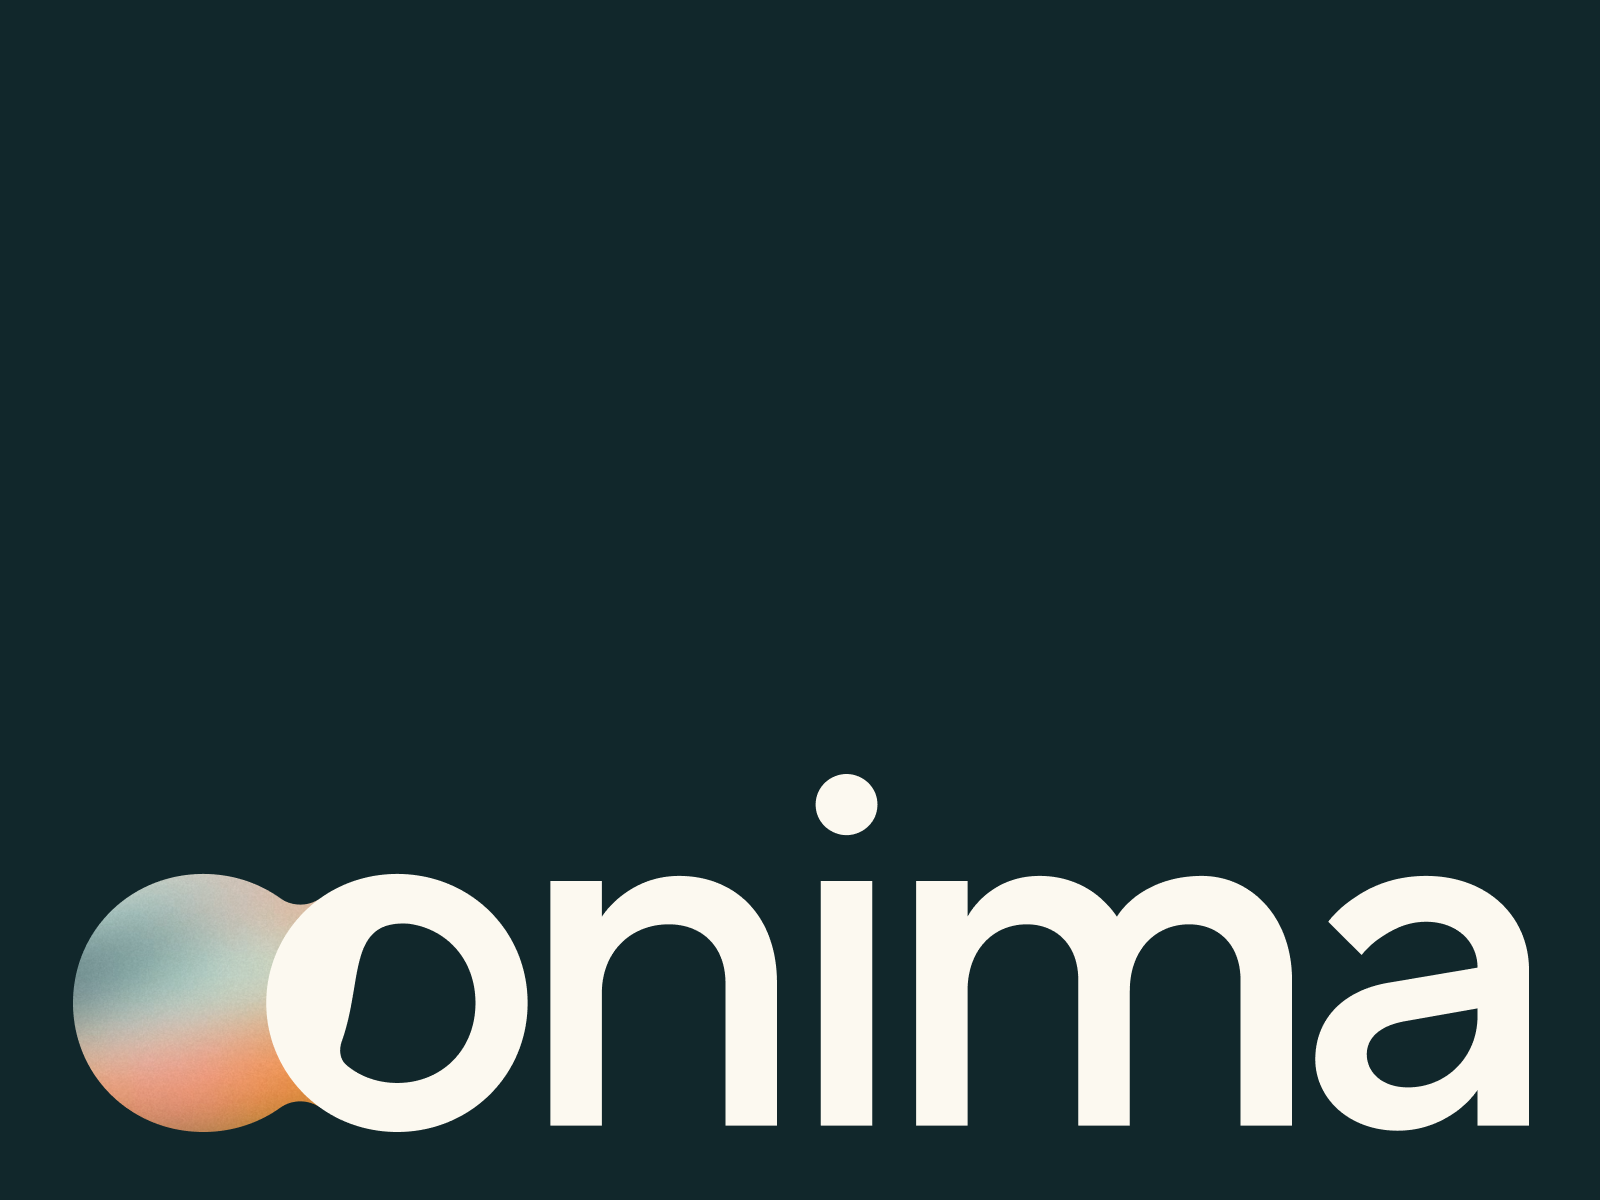 Onima - From Waste To Wonder